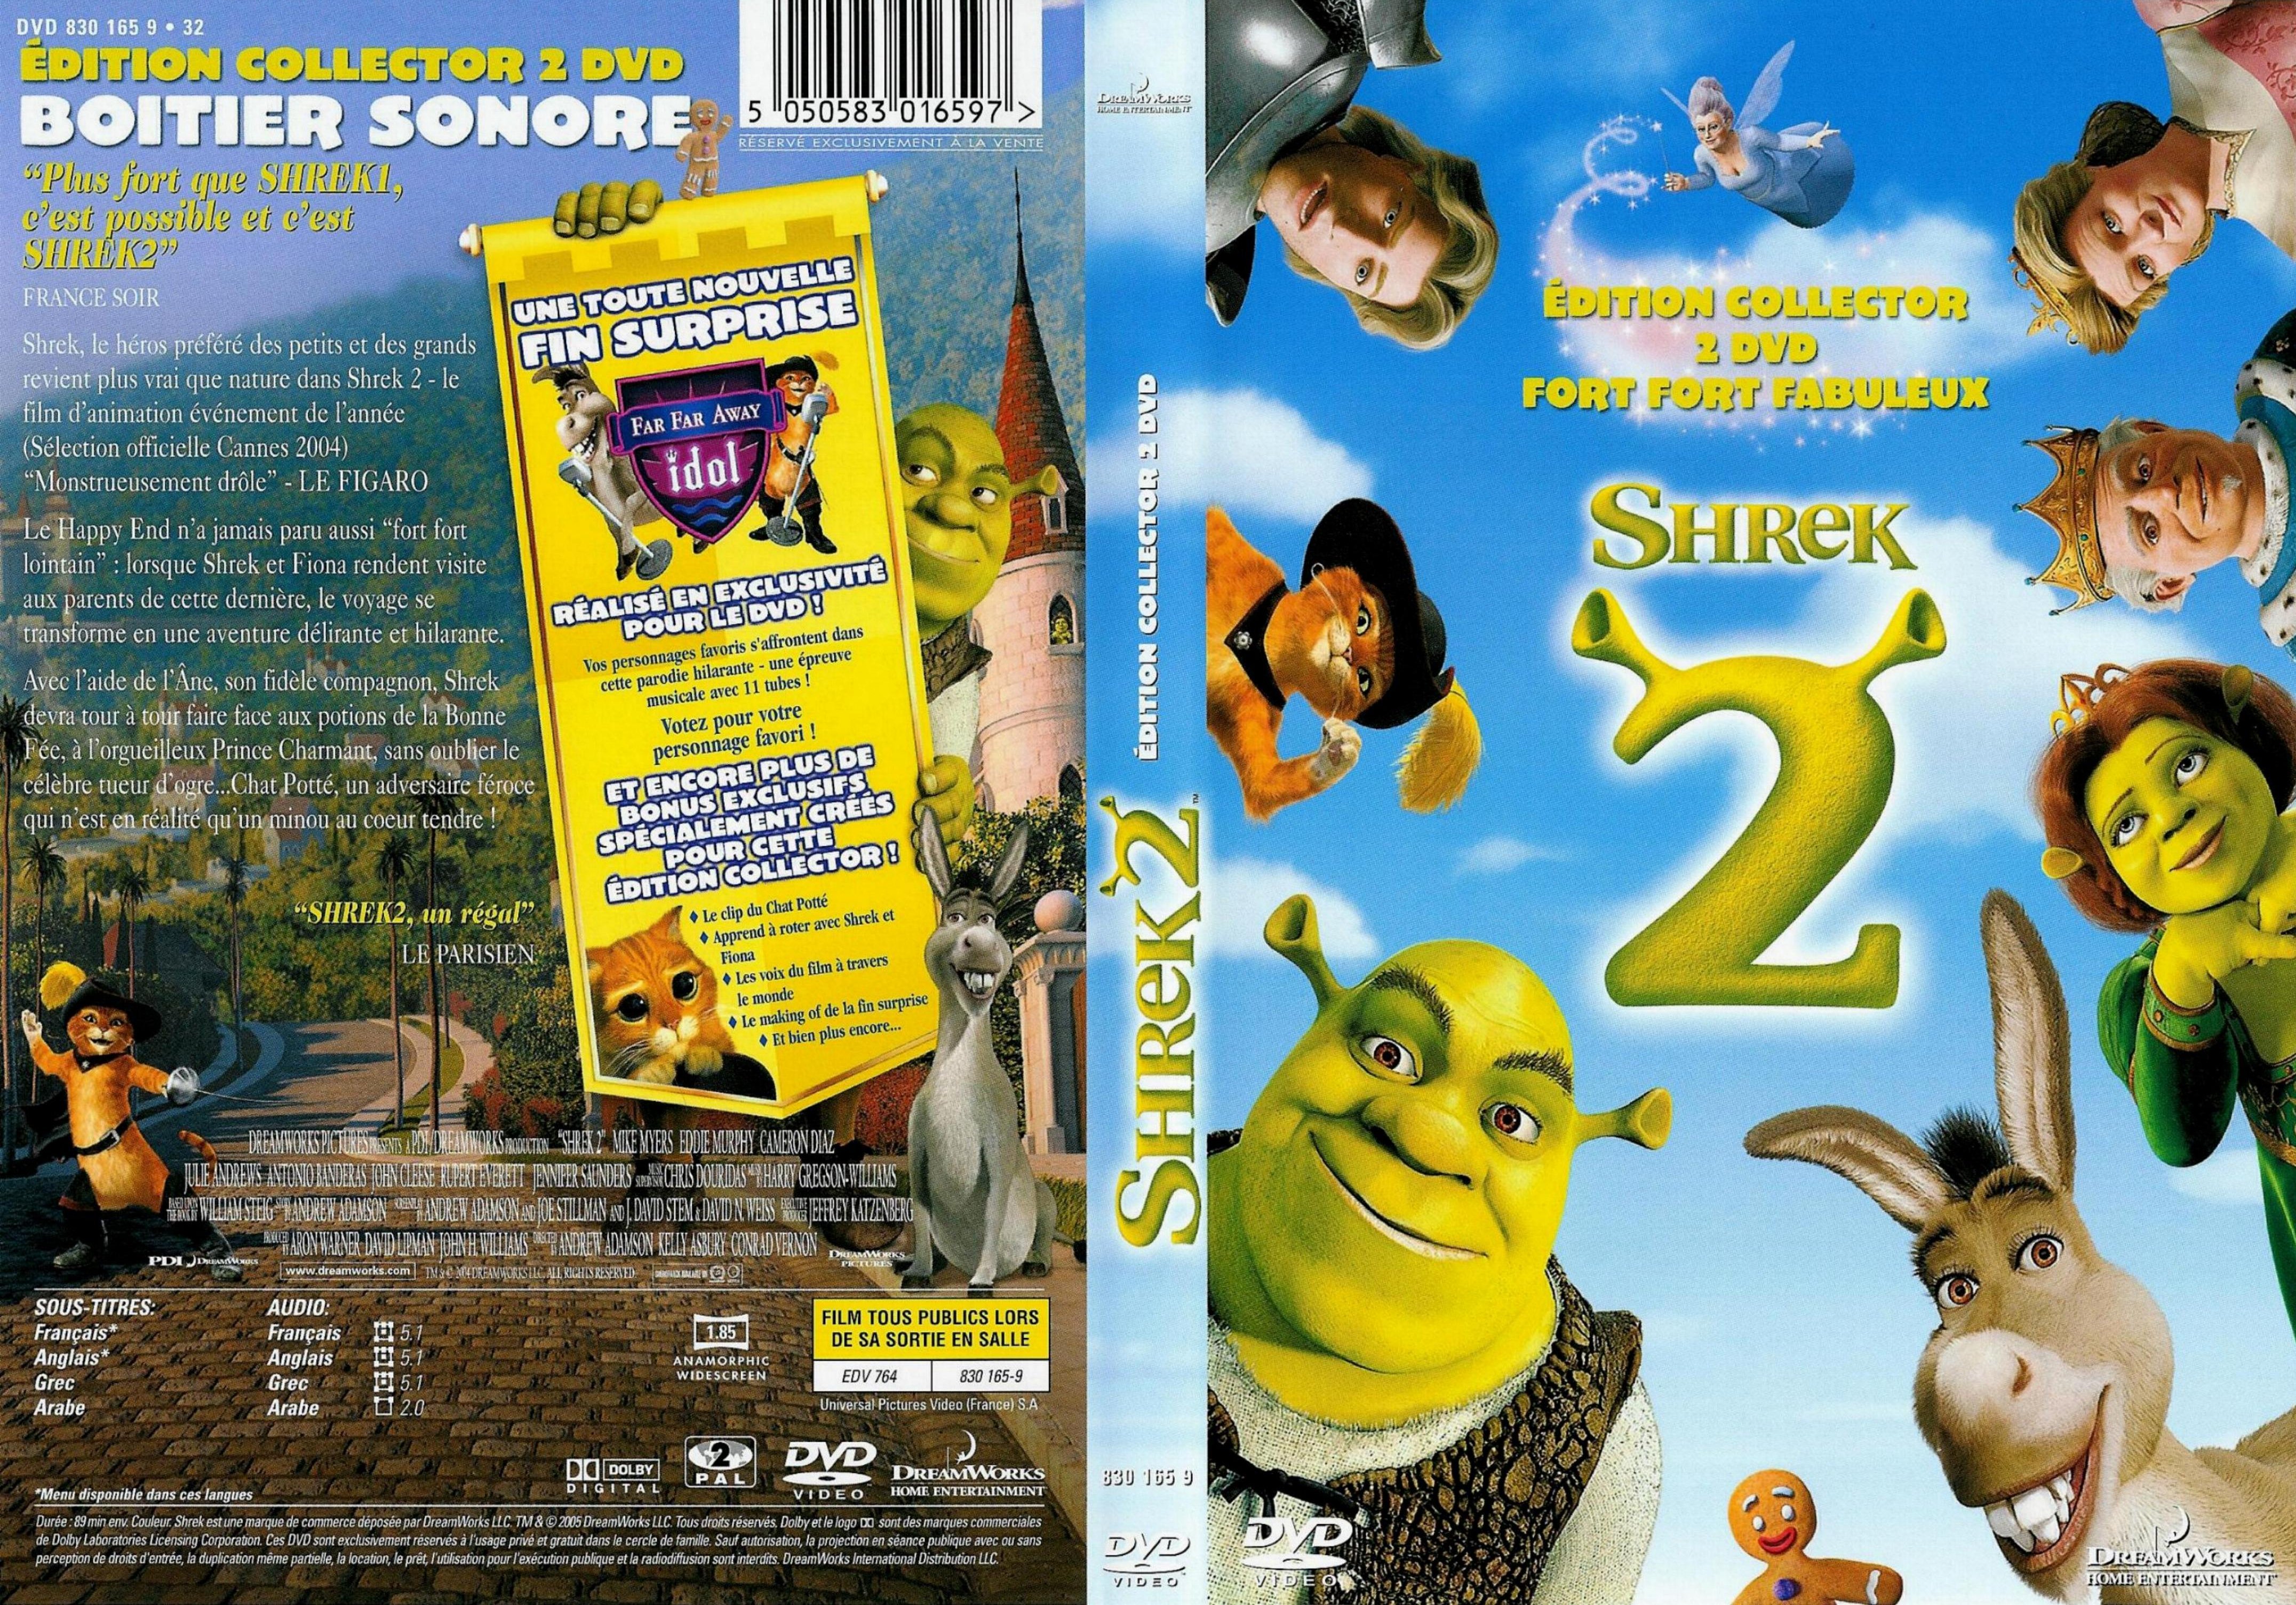 Jaquette DVD Shrek 2 v2